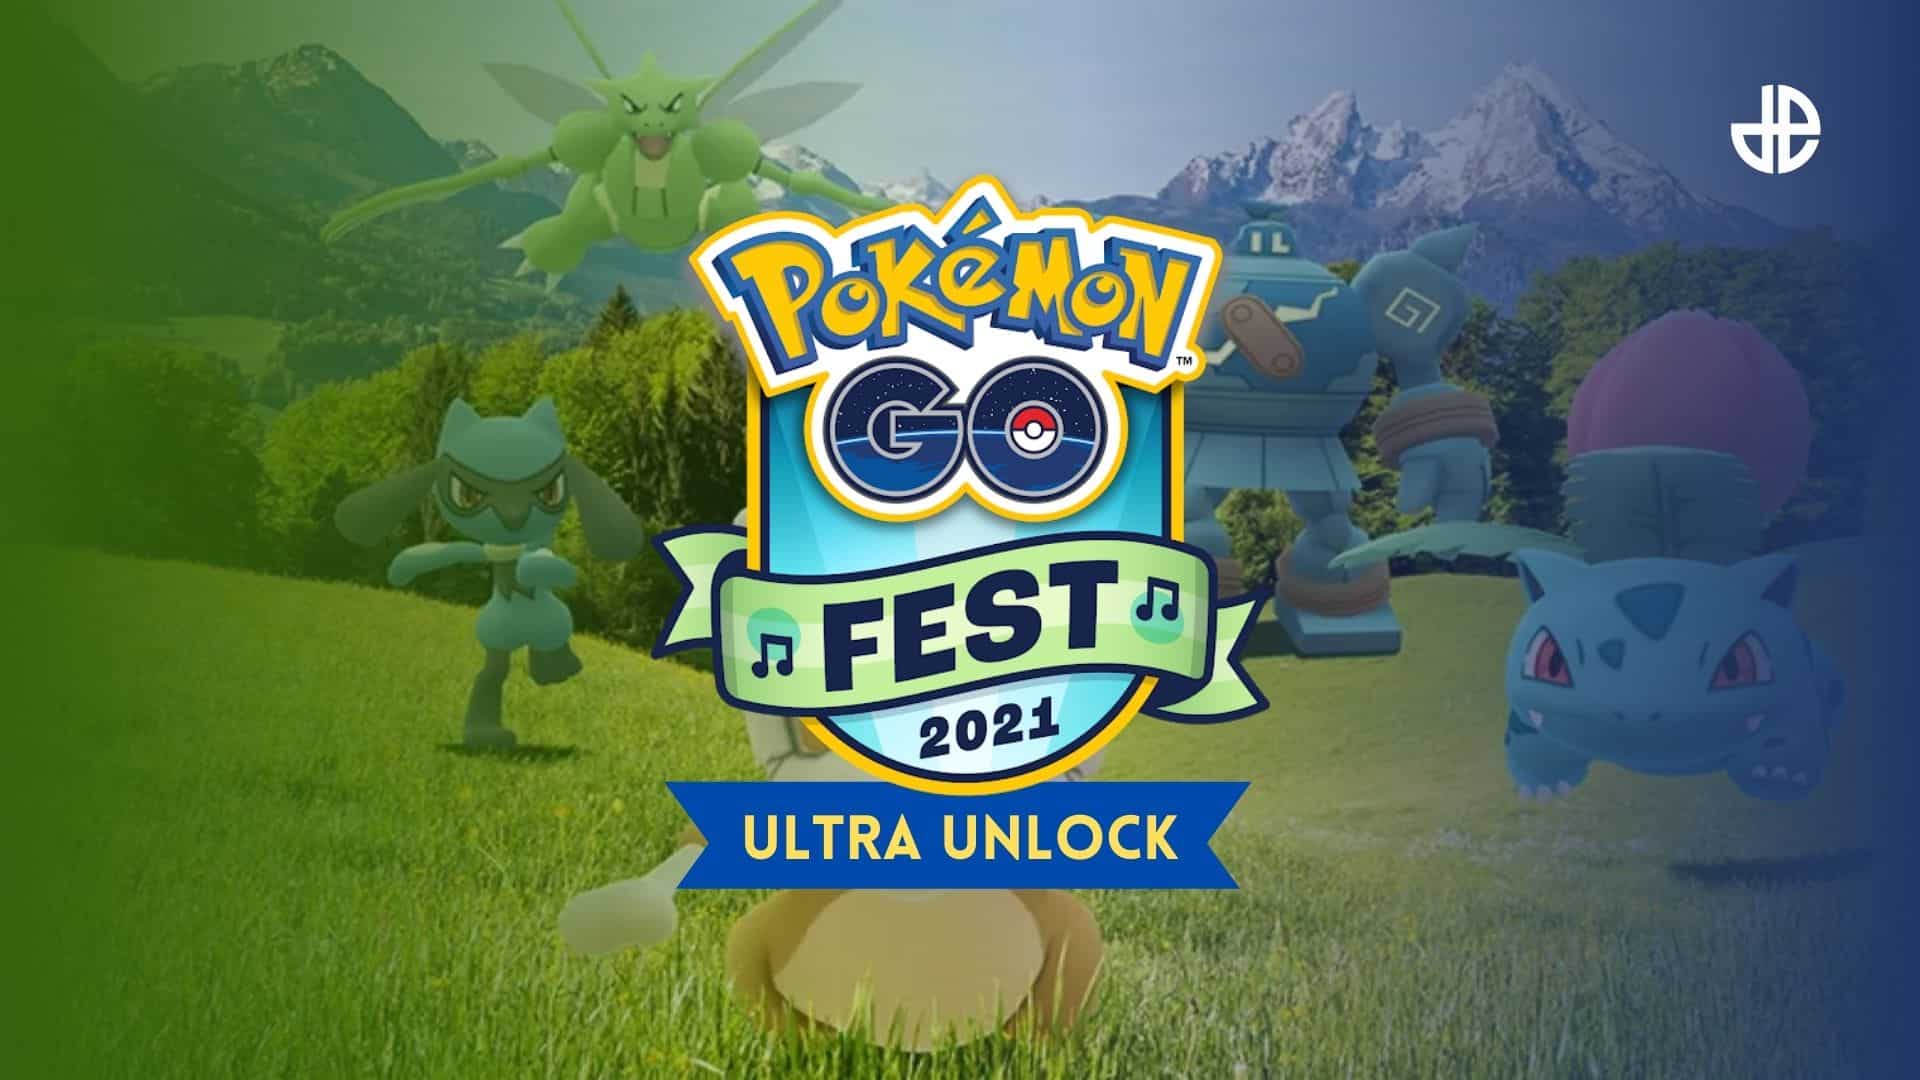 Pokémon Go Ultra Unlock 2021